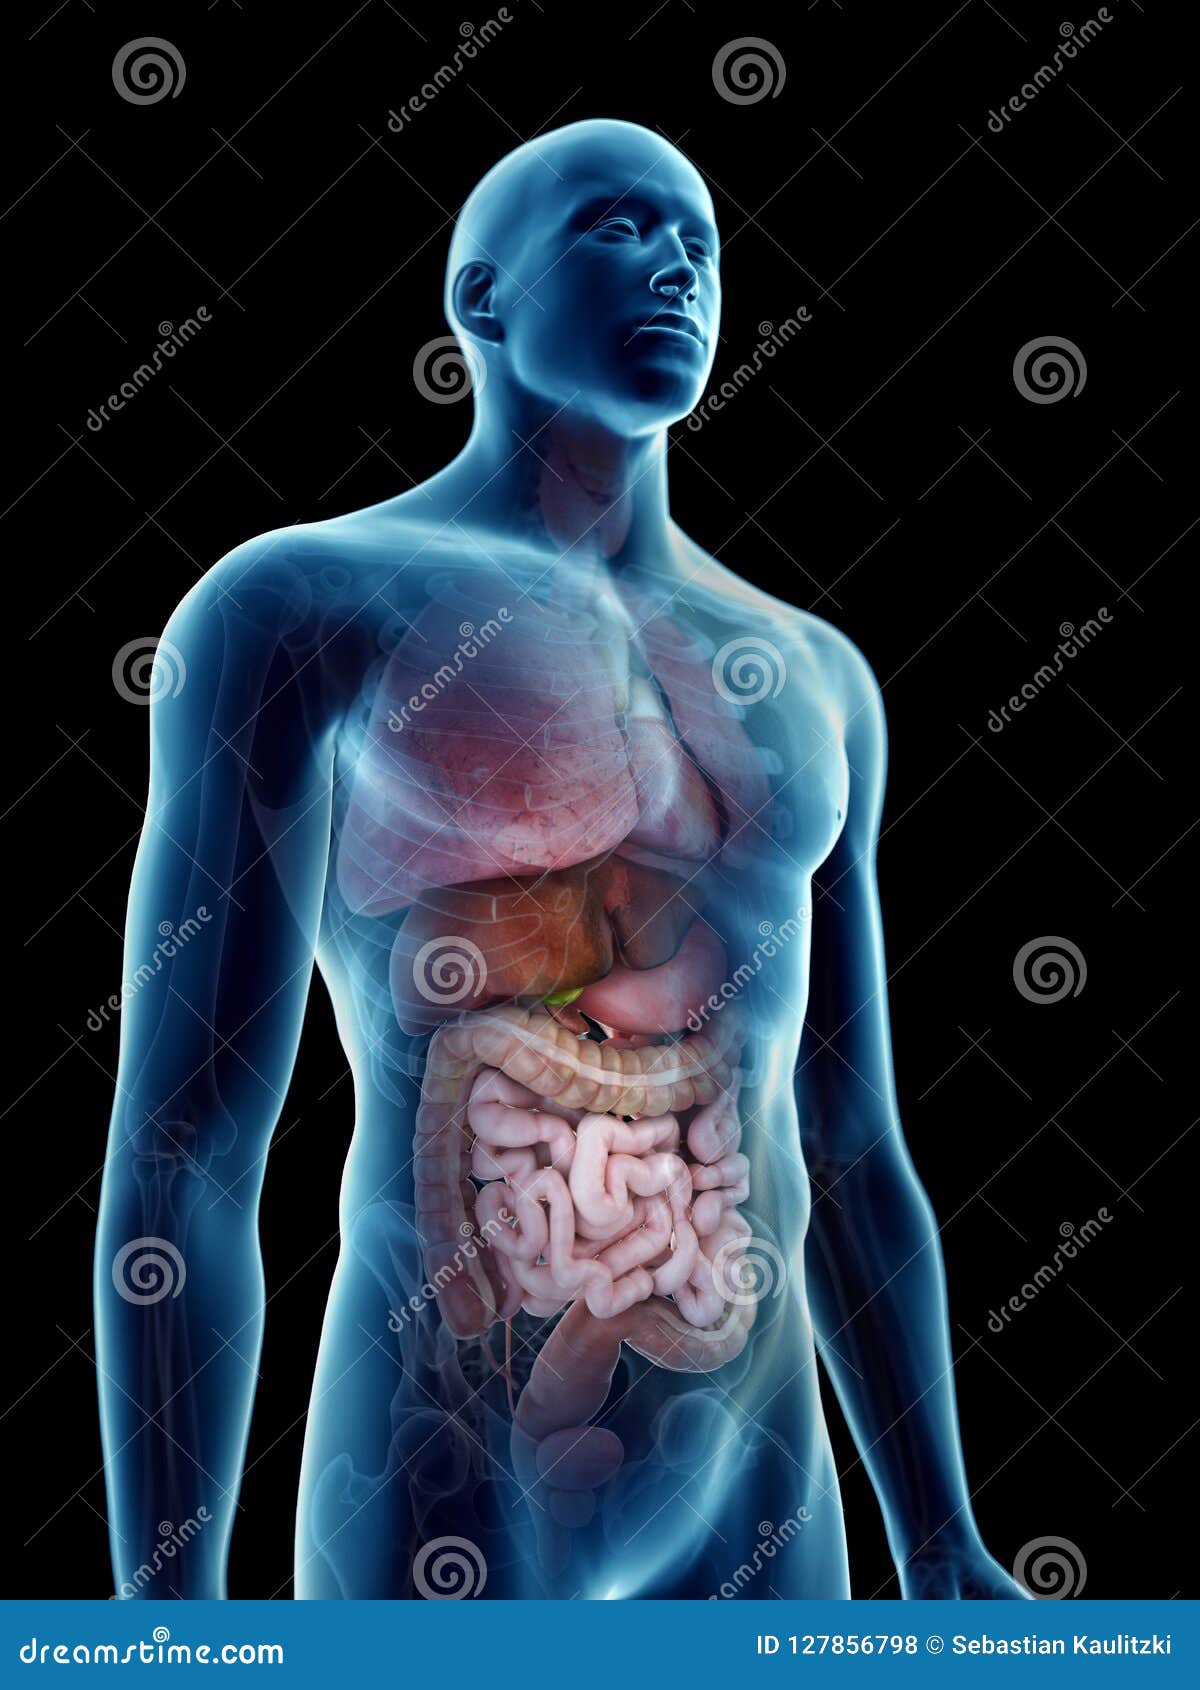 A mans internal organs stock illustration. Illustration of intestine